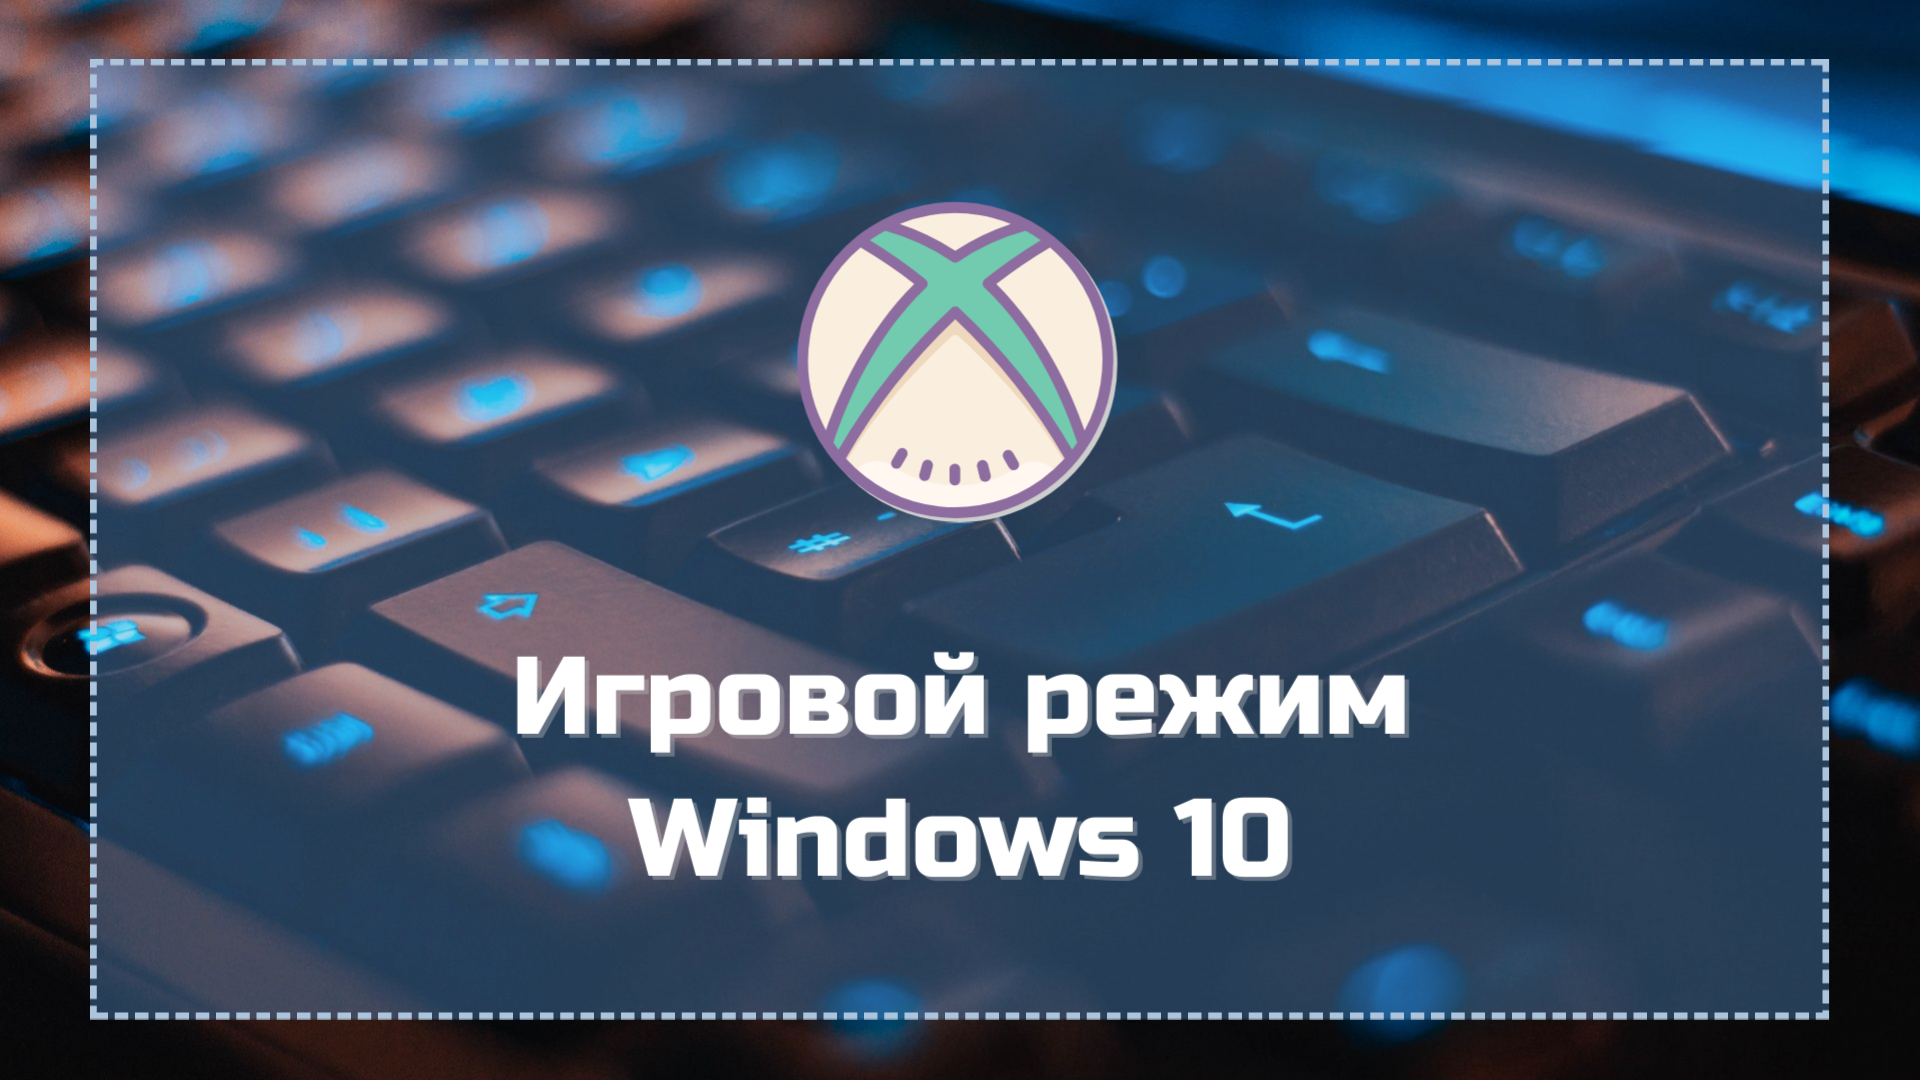 Игровой режим Windows 10